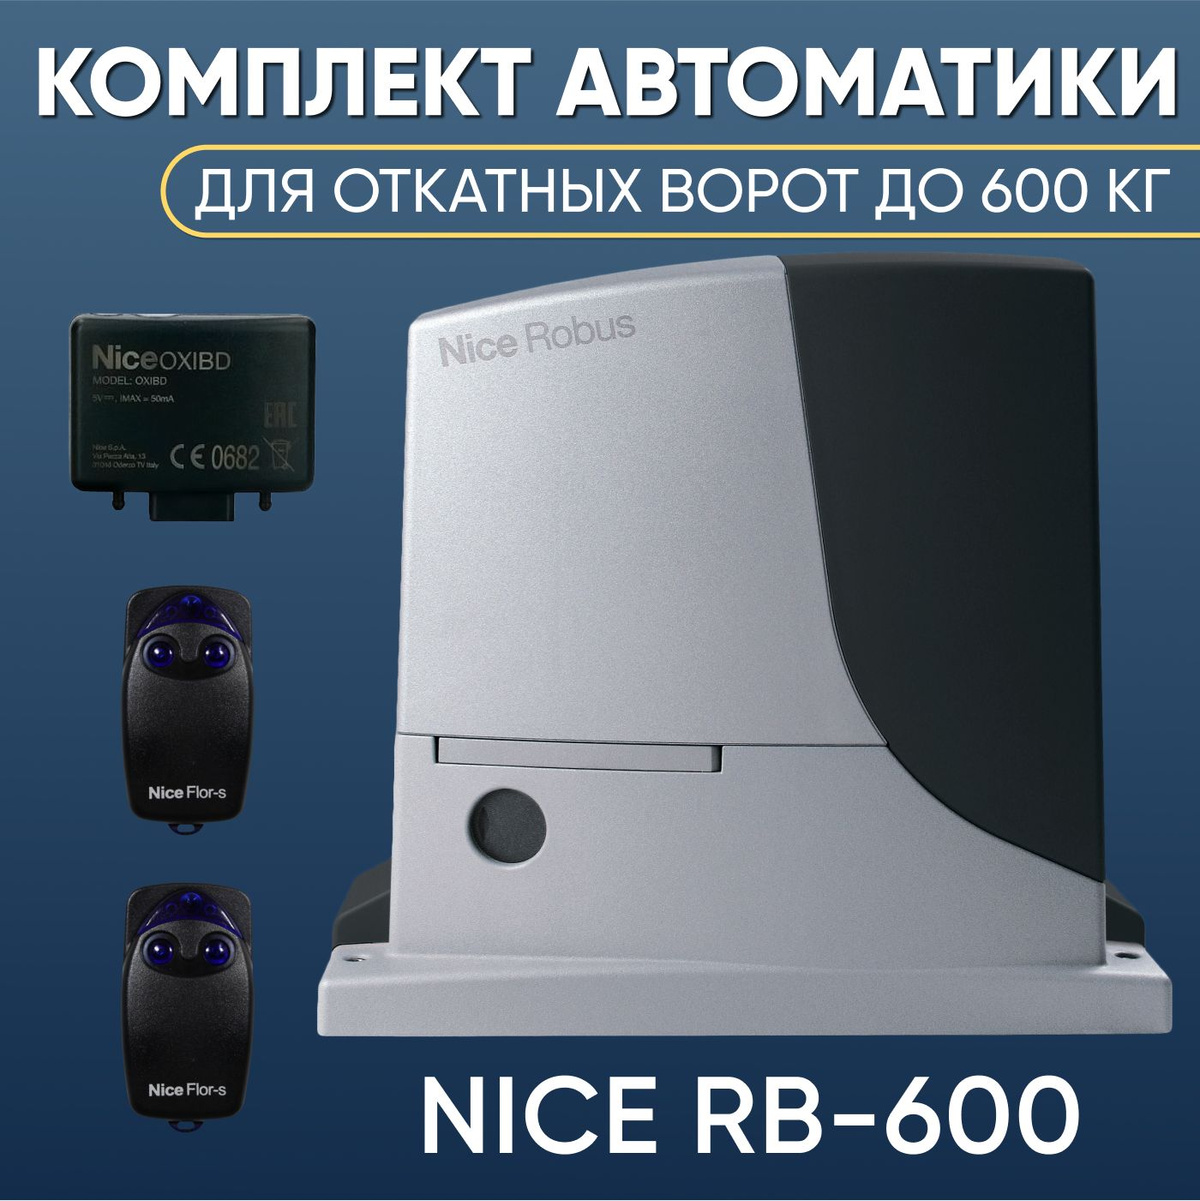 Комплект автоматики для откатных ворот Nice RB600KIT-FLO2R-S. Привод Nice RB600, Радиоприемник Nice OXI BD, два пульта управления NICE FLO2R-S